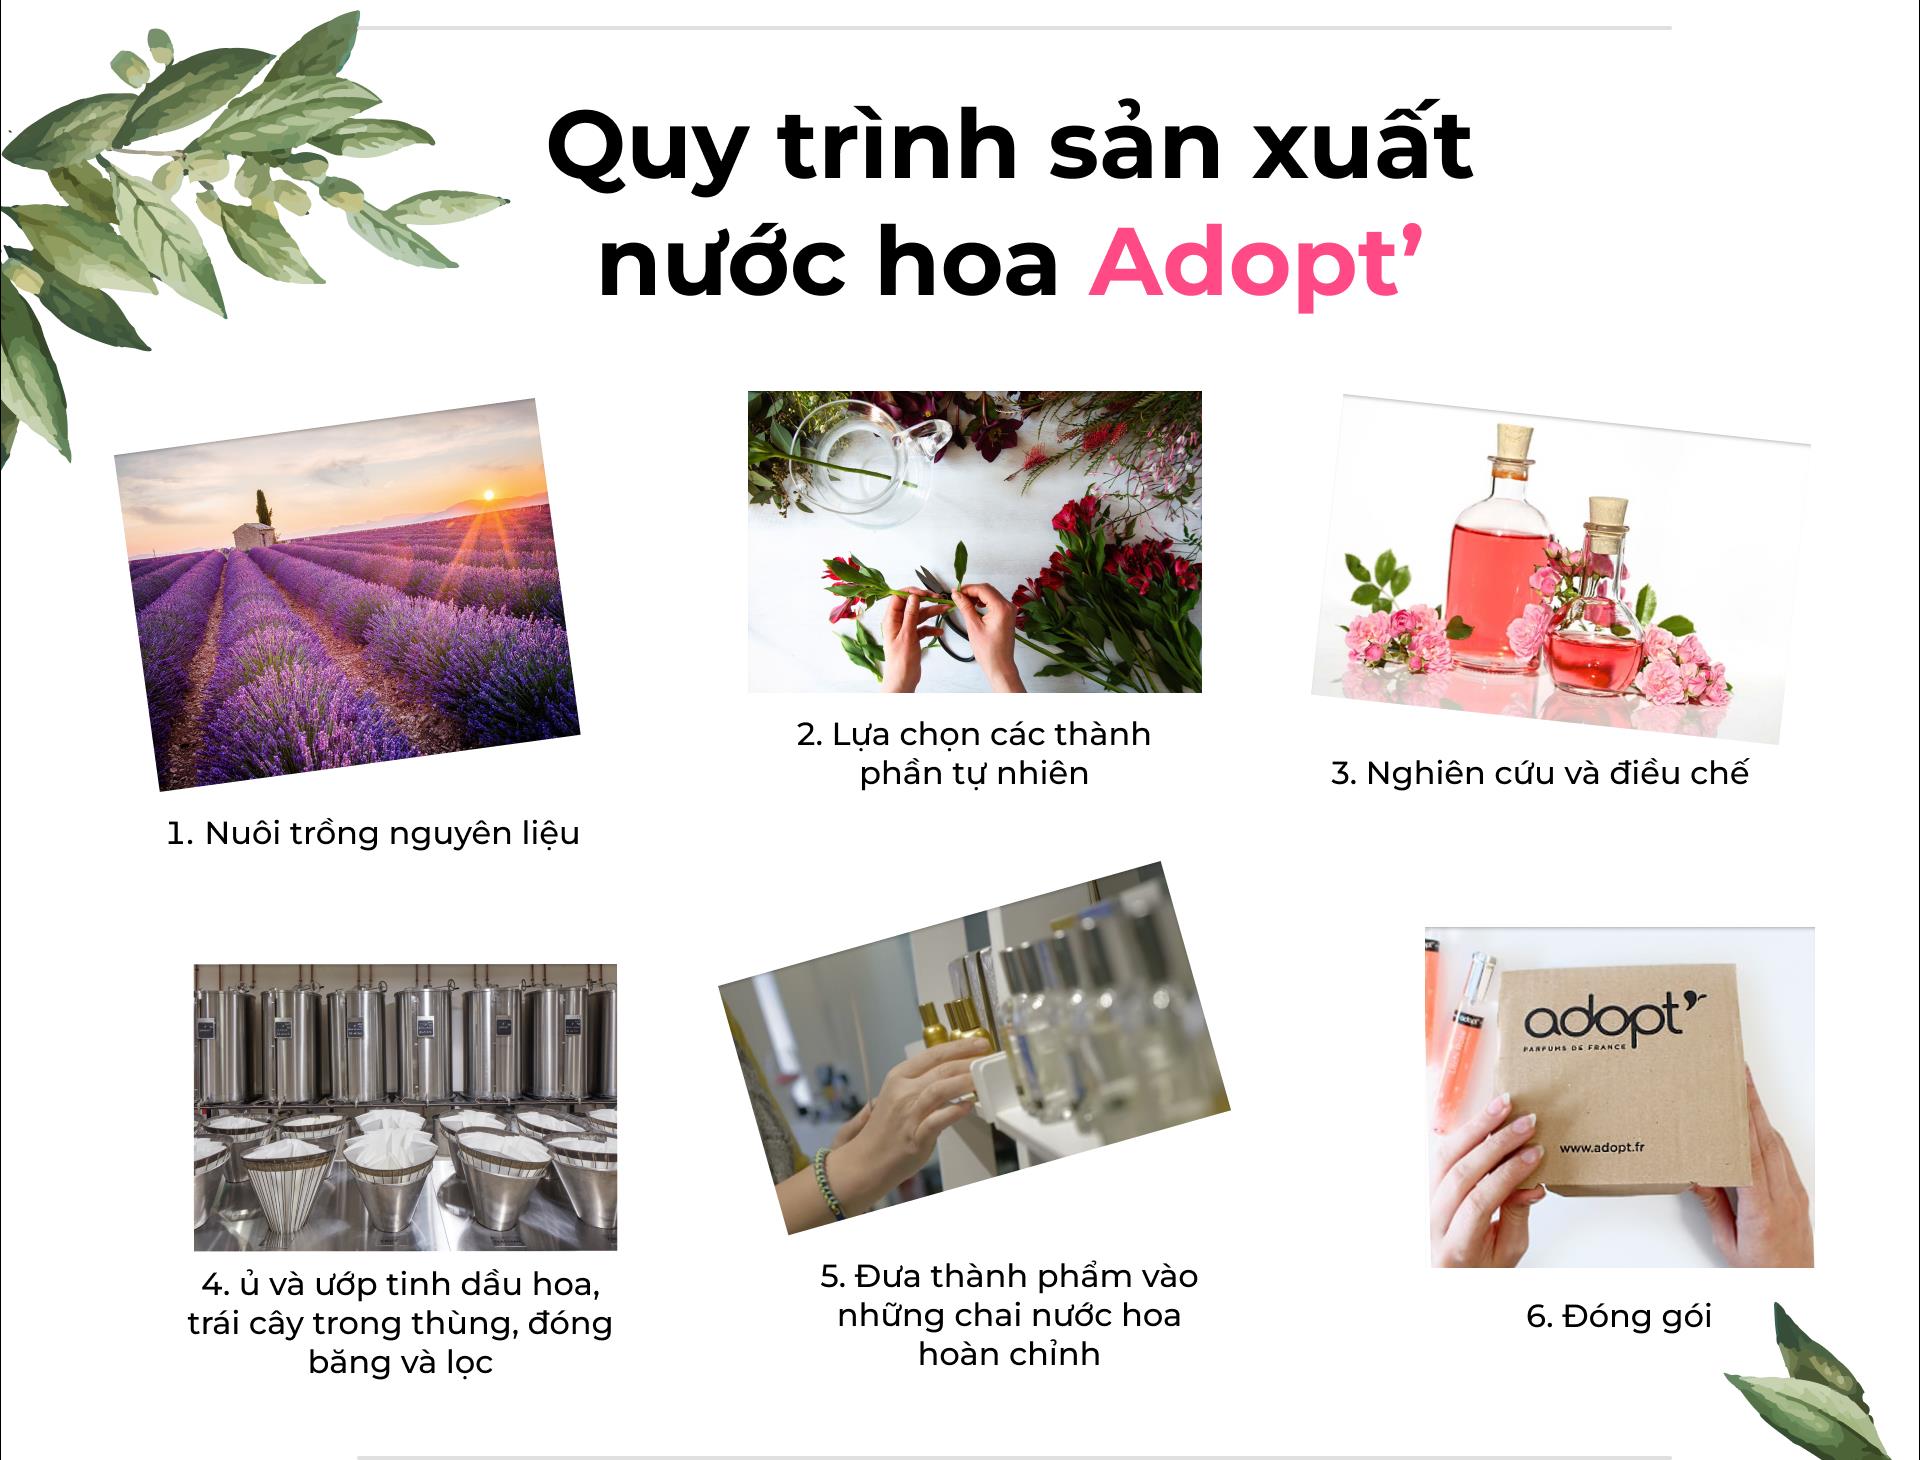 Adopt - Nước hoa hàng hiệu giá bình dân, nâng tầm trải nghiệm người dùng Việt - Ảnh 3.